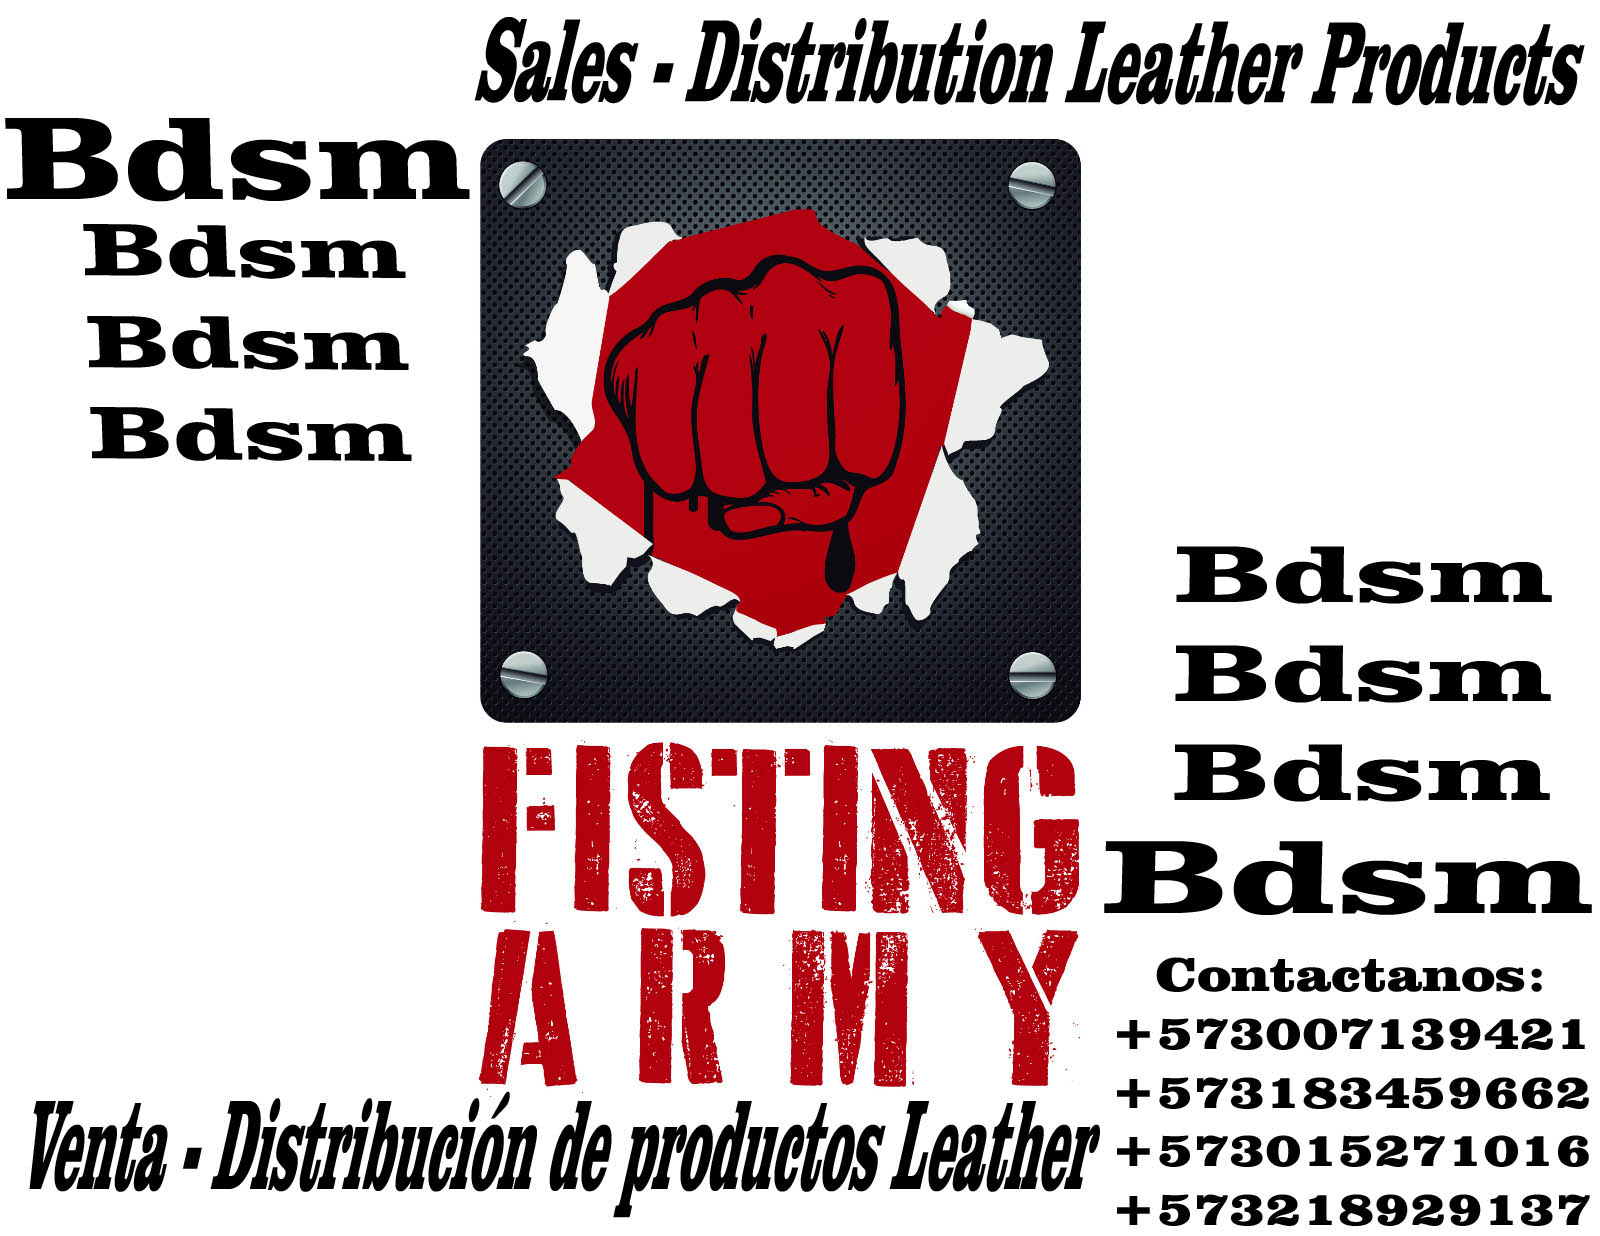 Venta - Comercialización de productos Leather